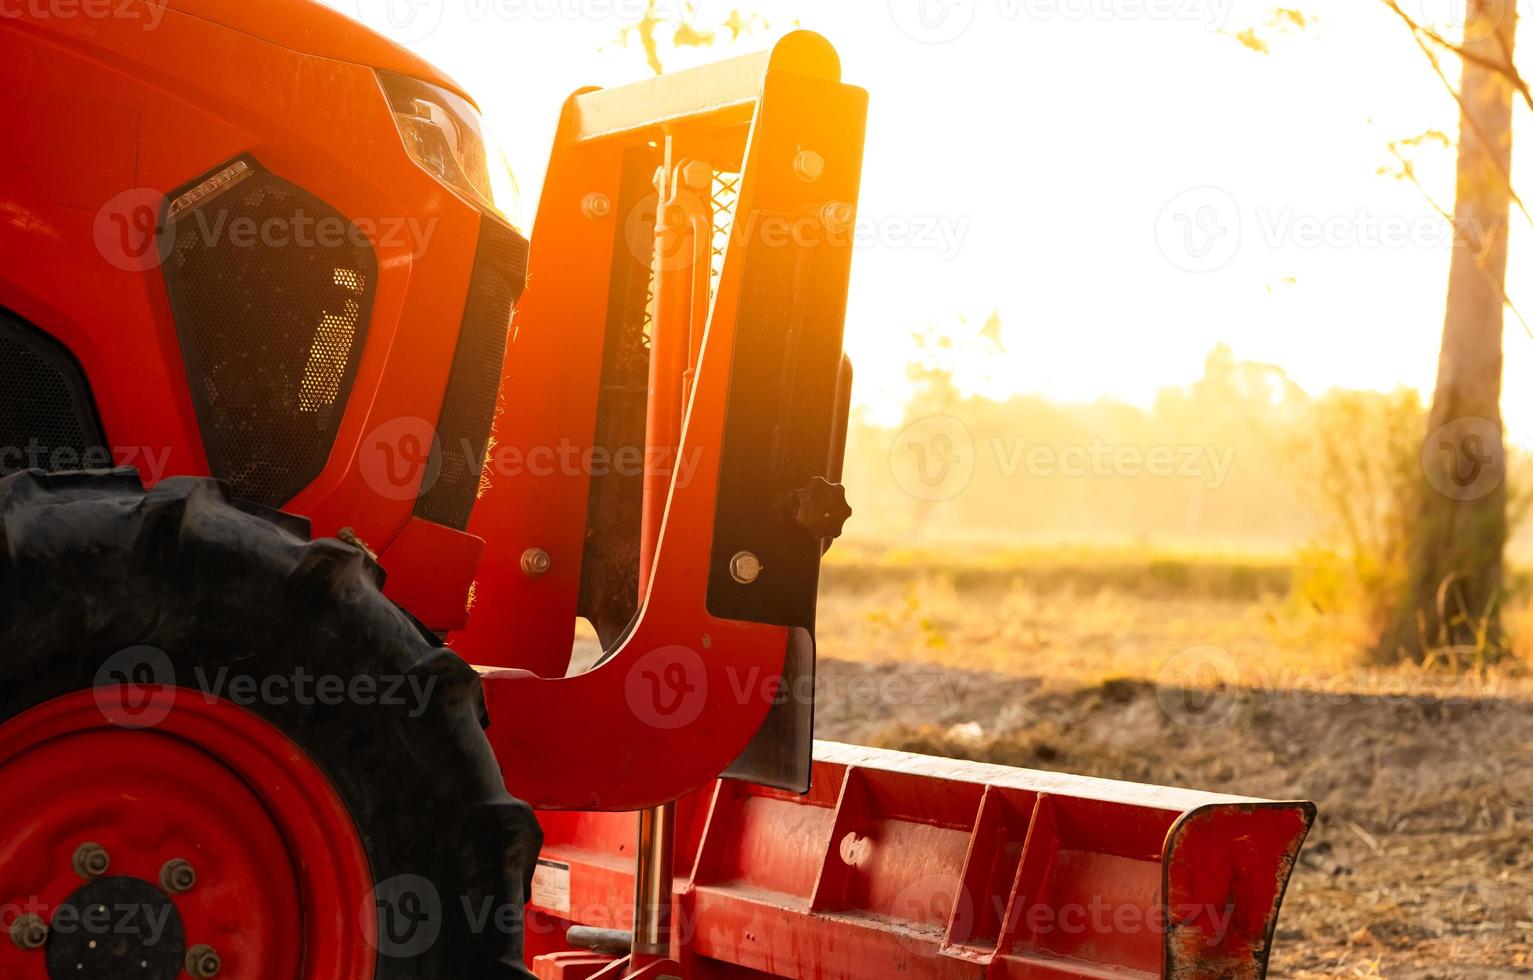 orange traktor parkerad på risfarm på sommarmorgonen med solljus. jordbruksmaskiner i jordbruksgård. smart jordbrukskoncept. fordon i gården. arbetsbesparande maskiner. utrustning för plantering foto